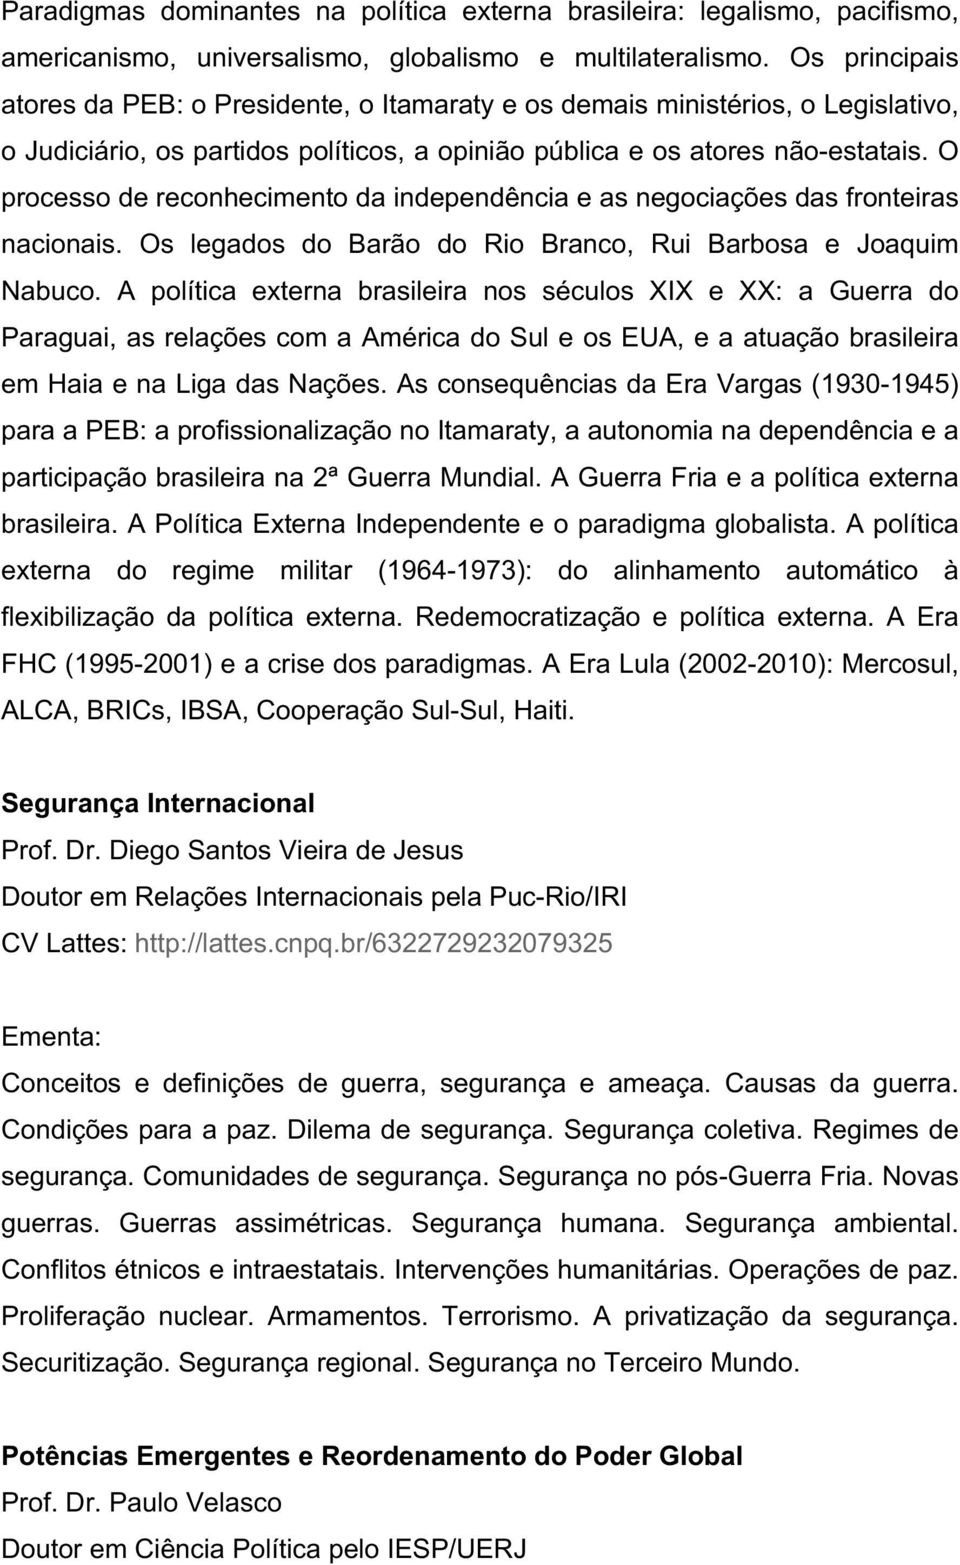 O processo de reconhecimento da independência e as negociações das fronteiras nacionais. Os legados do Barão do Rio Branco, Rui Barbosa e Joaquim Nabuco.